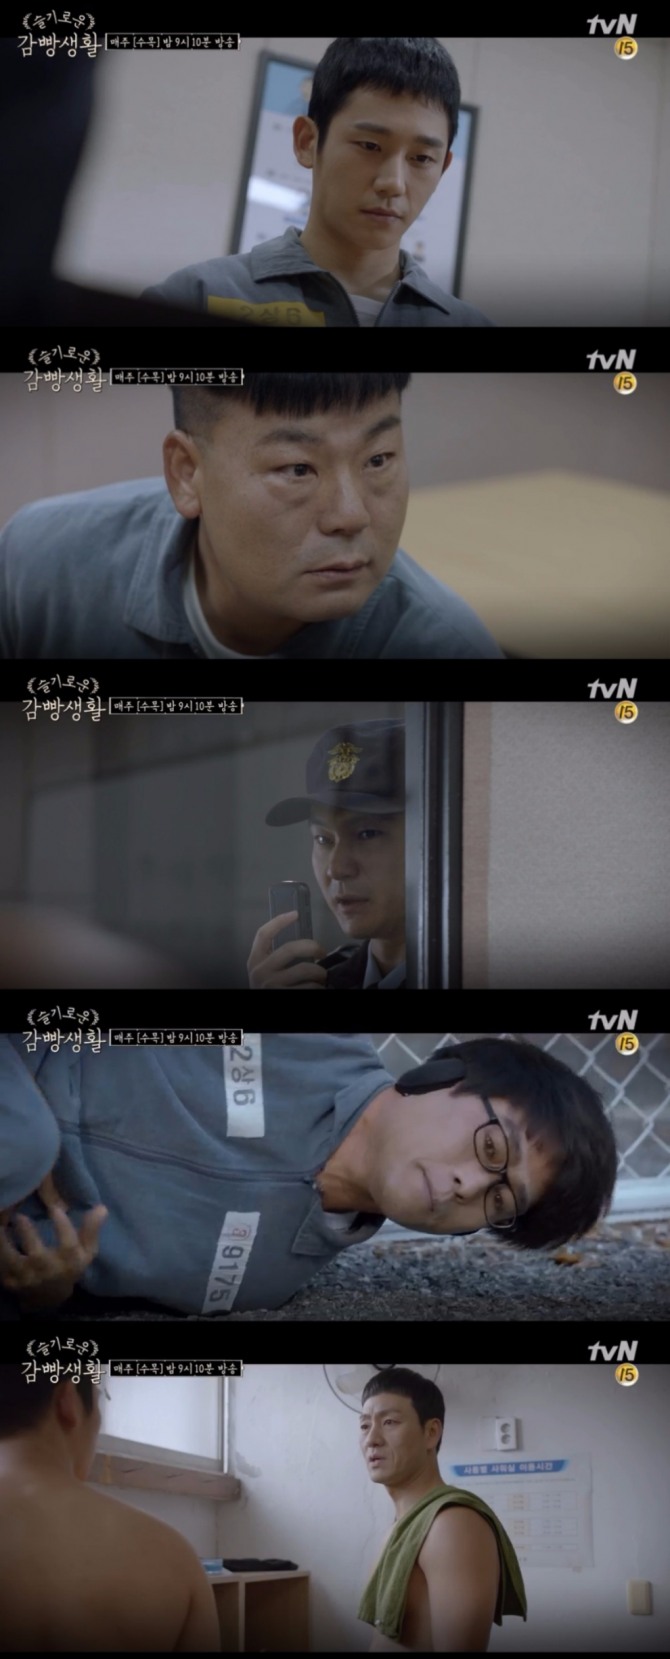 14일 오후 방송되는 tvN '슬기로운 감빵생활' 8회에서는 고박사(정민성)가 복통으로 쓰러진 가운데 유대위(정해인)의 군부대 생활이 그려져 진상이 좀 더 공개된다. 사진=tvN 영상 캡처